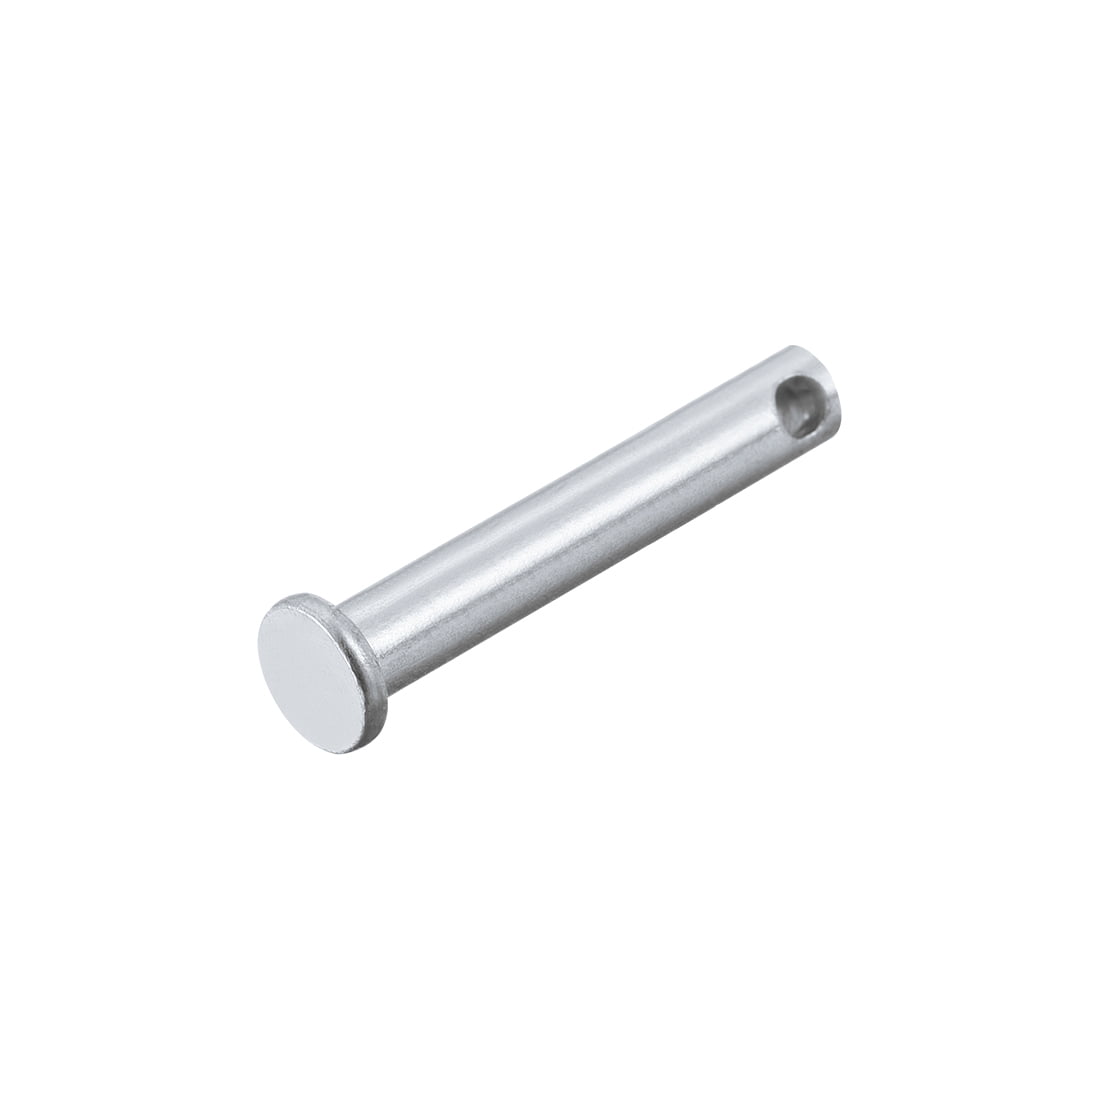 6mm x 25mm Flat Head Zinc-Plating Solid Steel Pin 12Pcs Single Hole Clevis Pins 